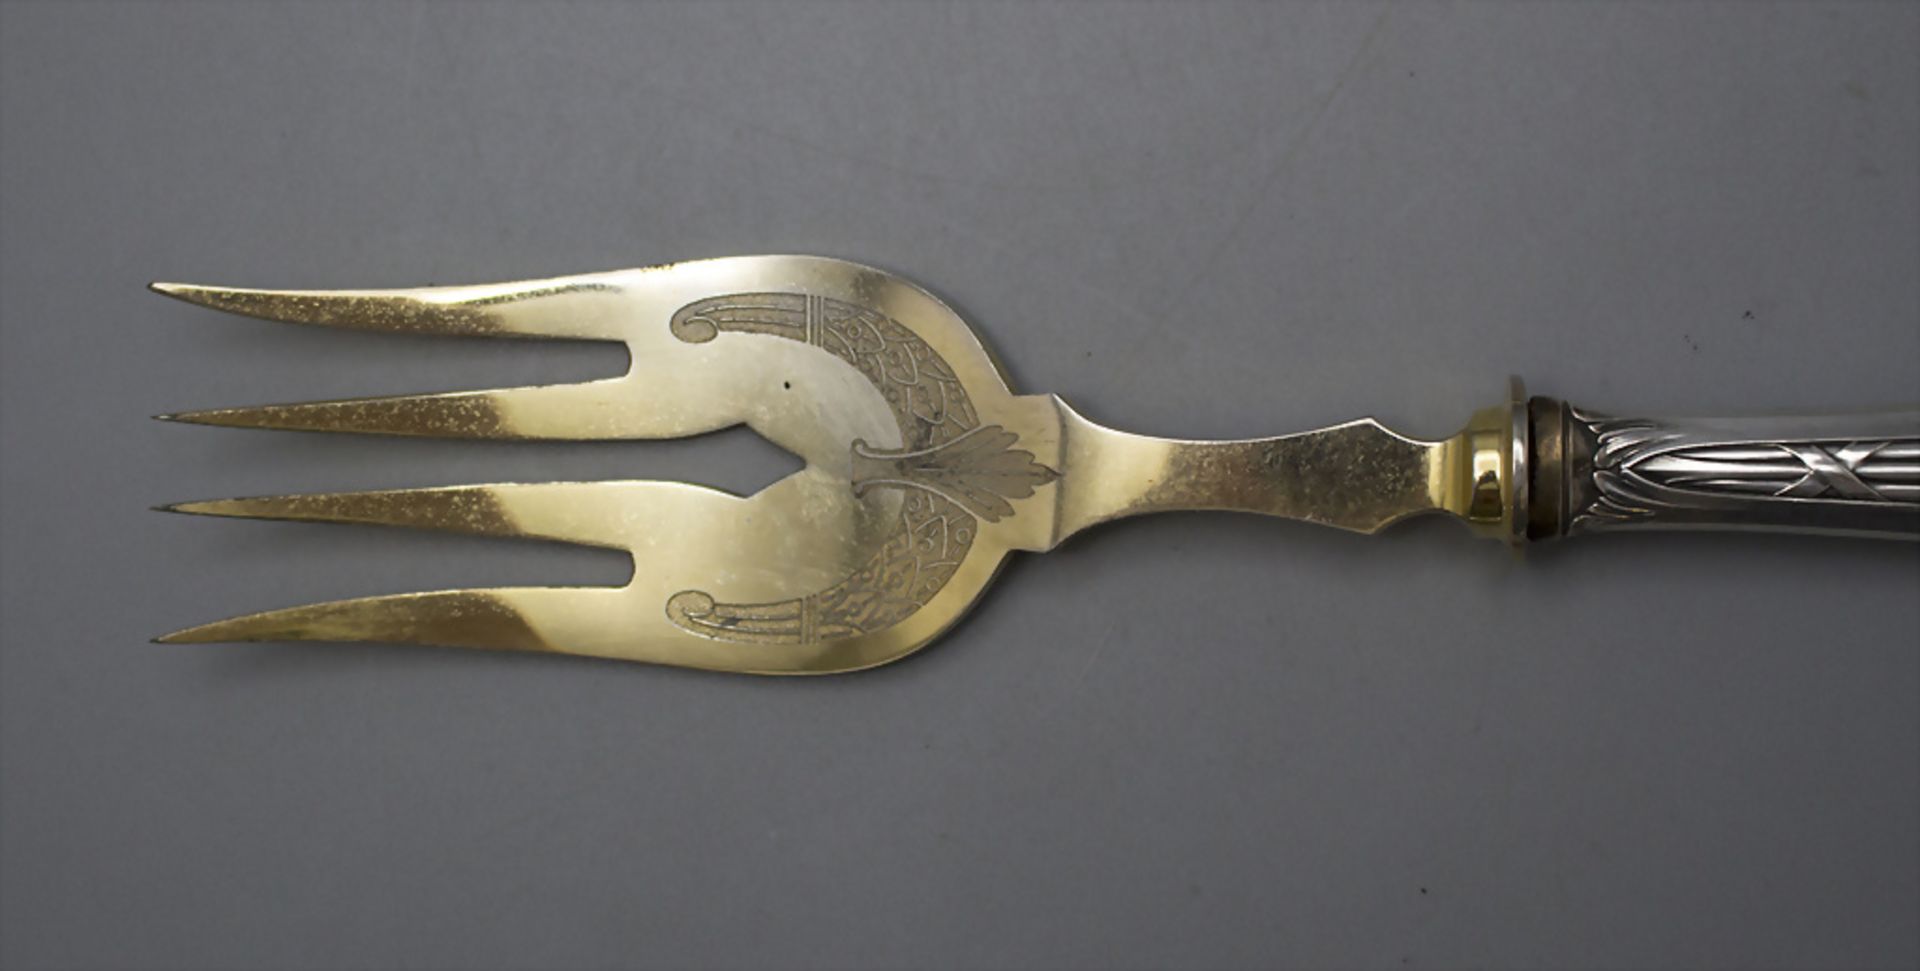 2 Teile Vorlegebesteck / A 2-piece set of serving cutlery, um 1900 - Bild 4 aus 4